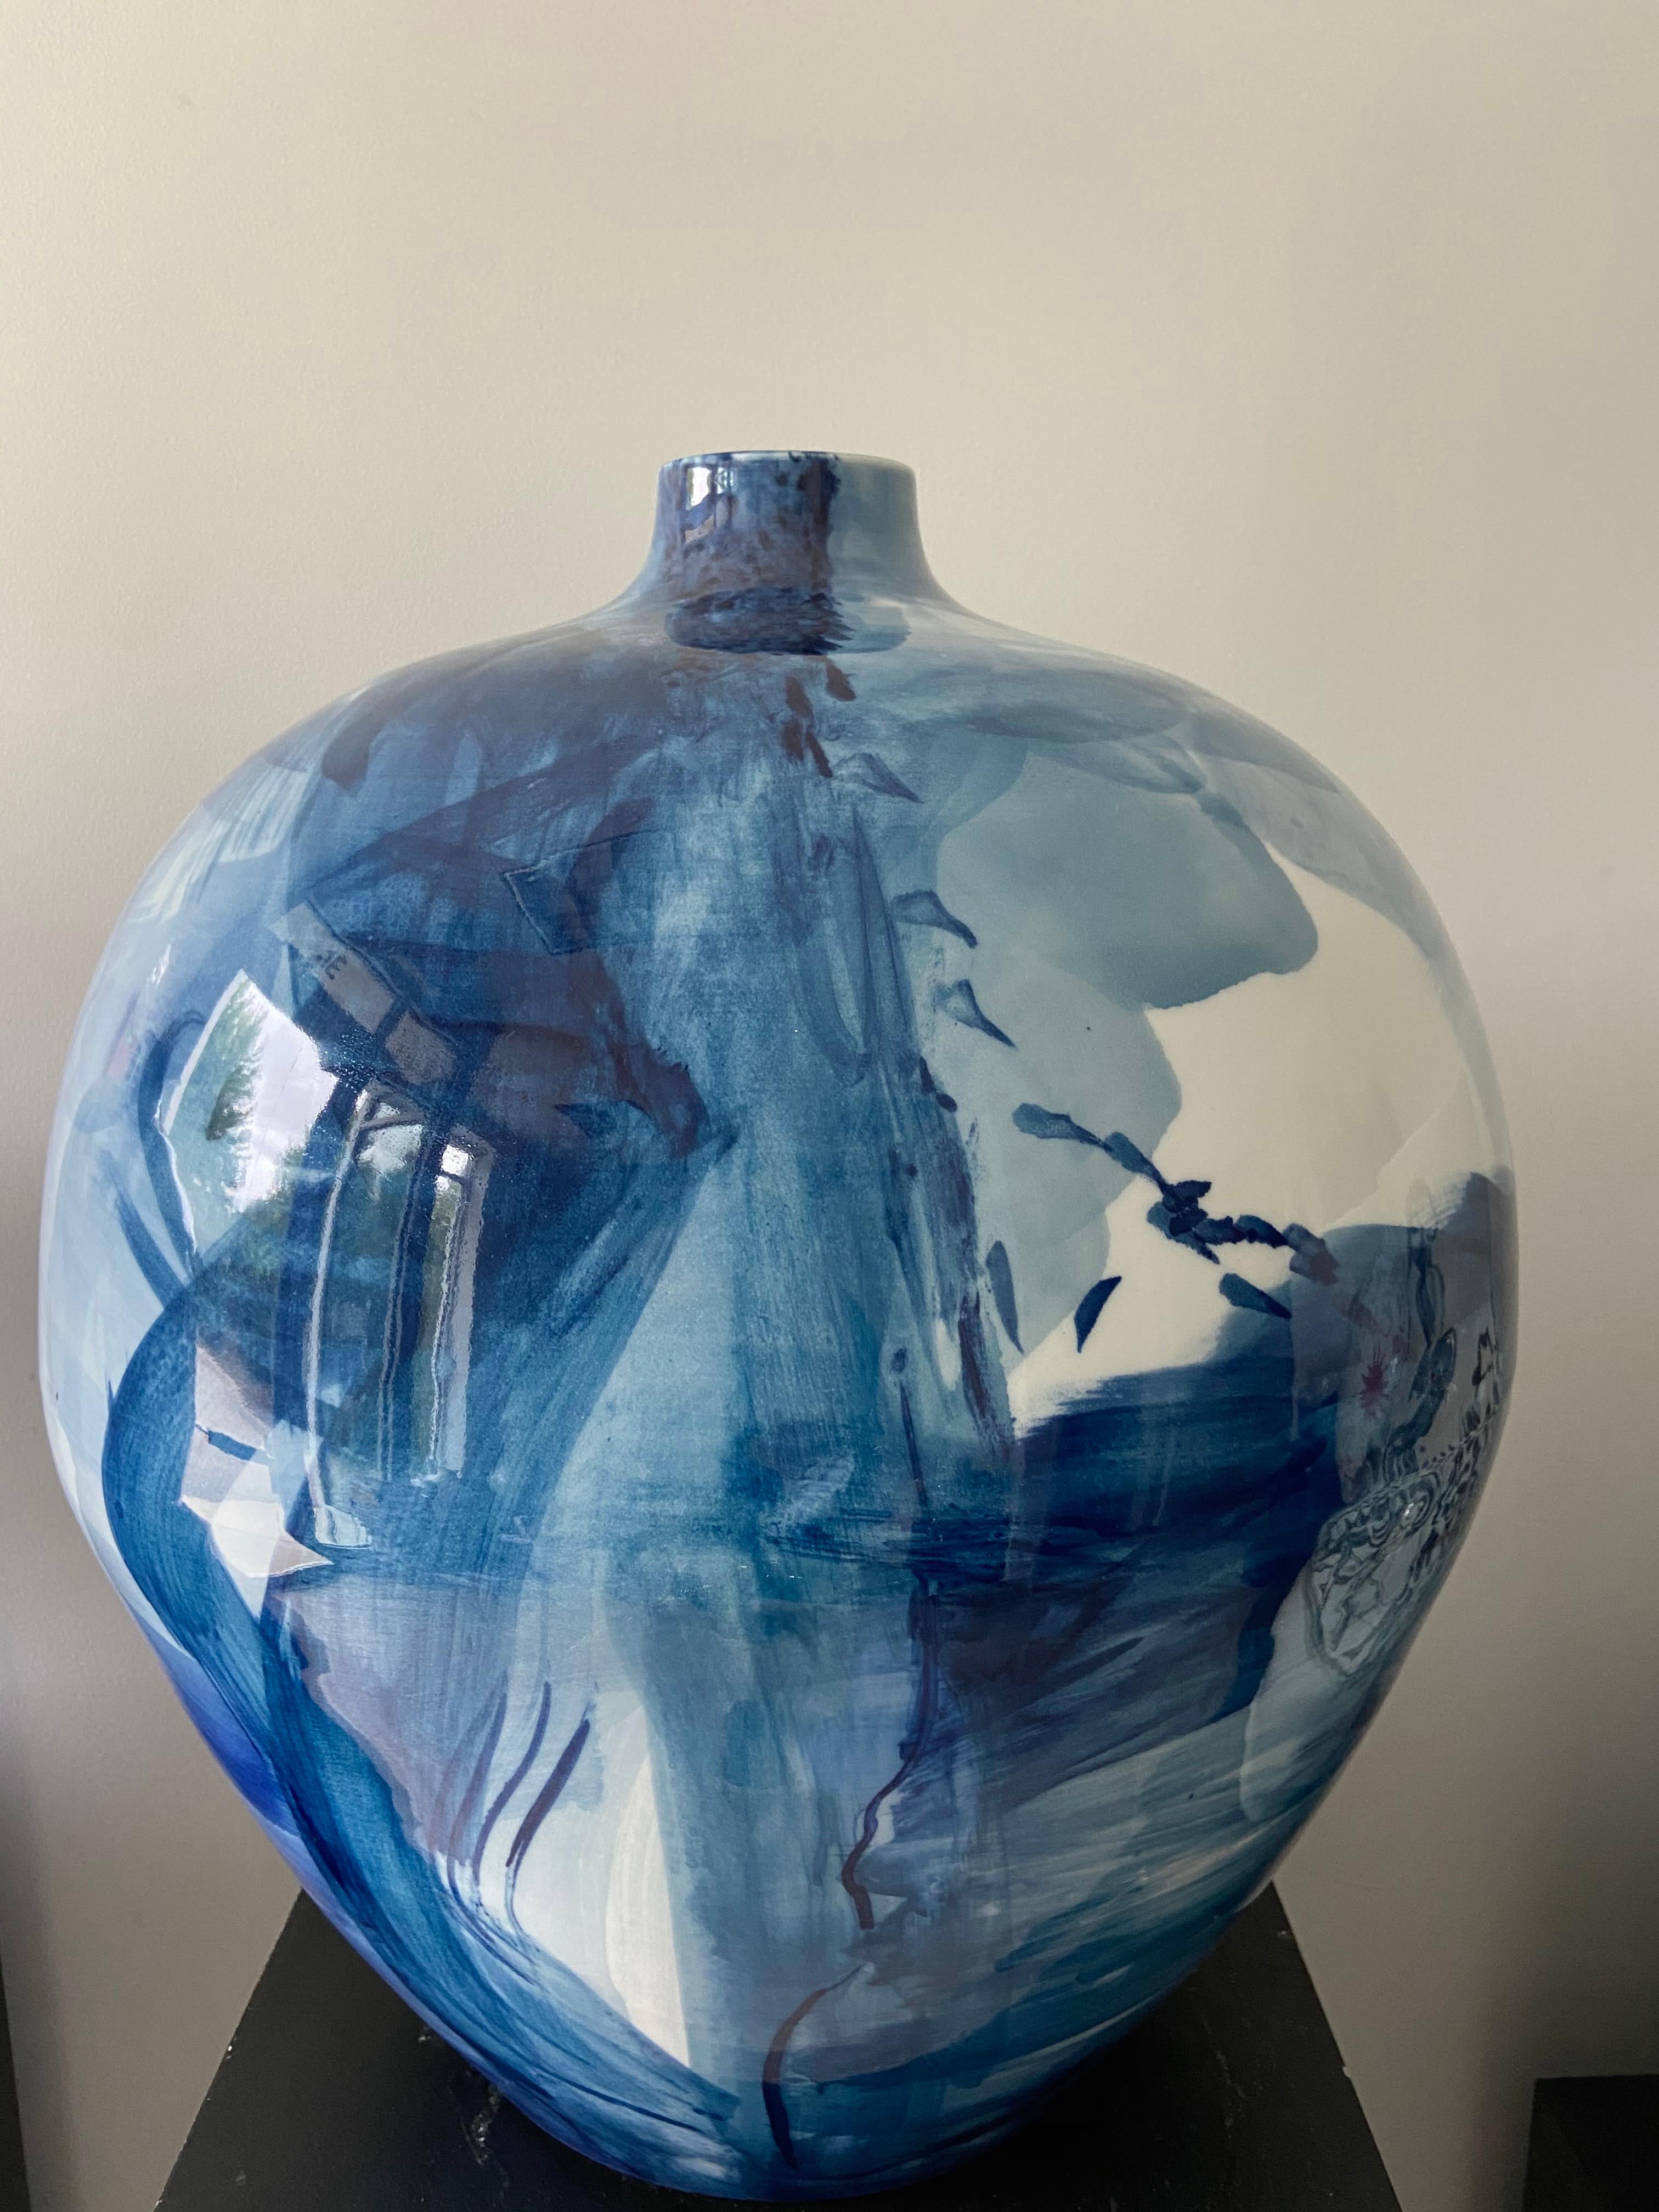 Tieferes Blau (Schwarz), Abstract Sculpture, von Jared Fitzgerald